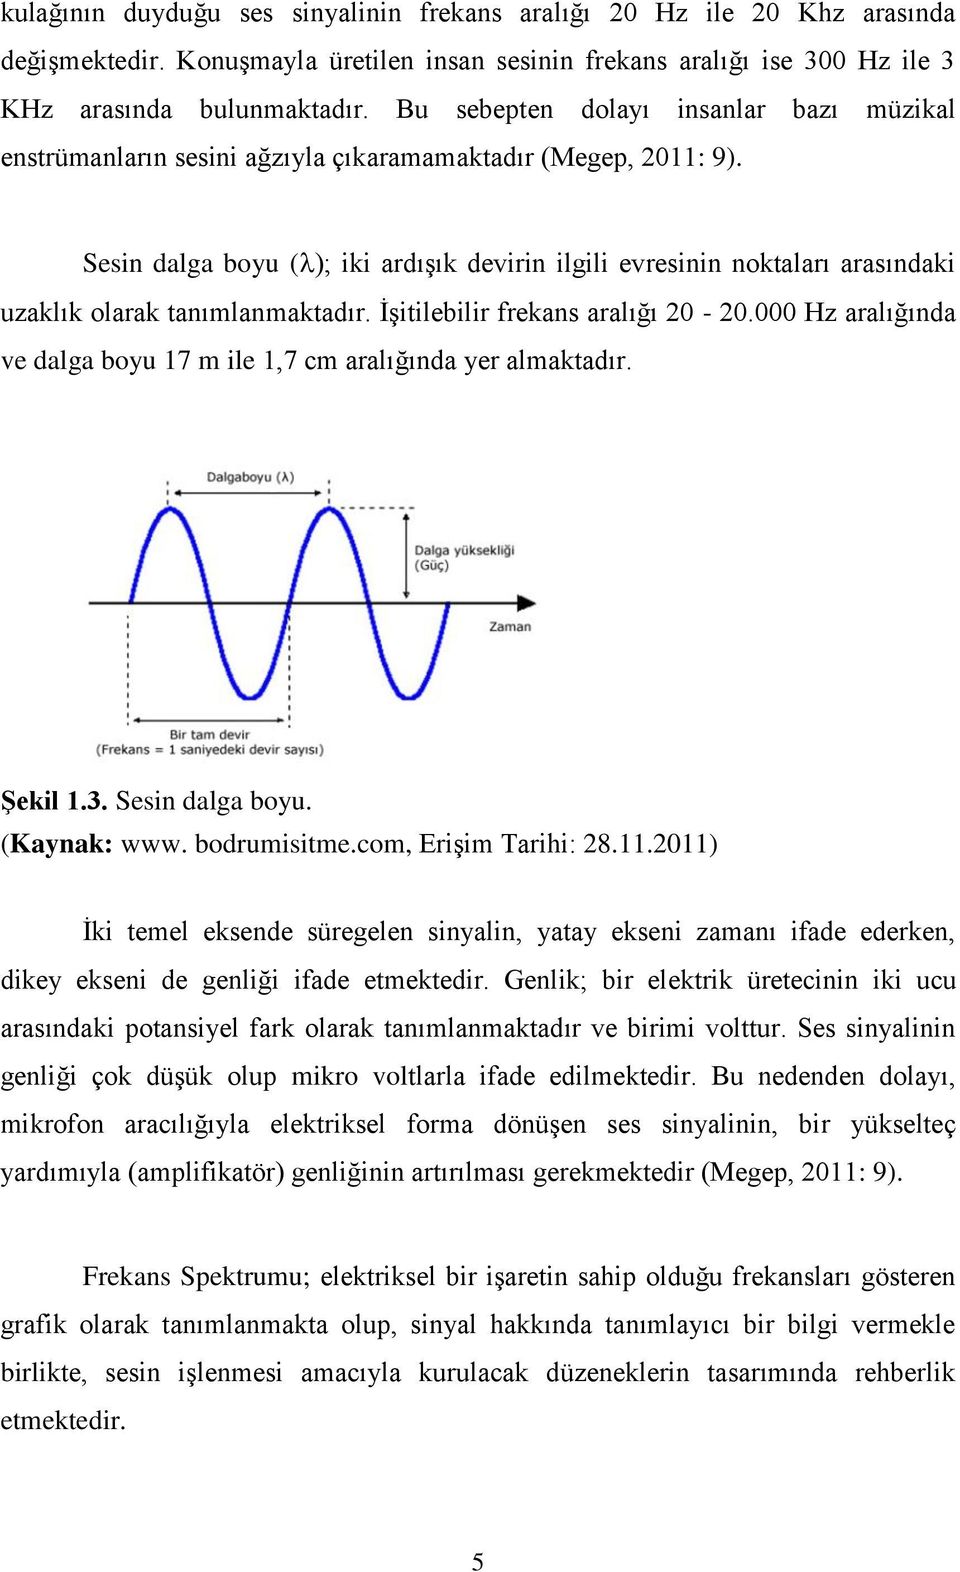 Sesin dalga boyu ( ); iki ardışık devirin ilgili evresinin noktaları arasındaki uzaklık olarak tanımlanmaktadır. İşitilebilir frekans aralığı 20-20.